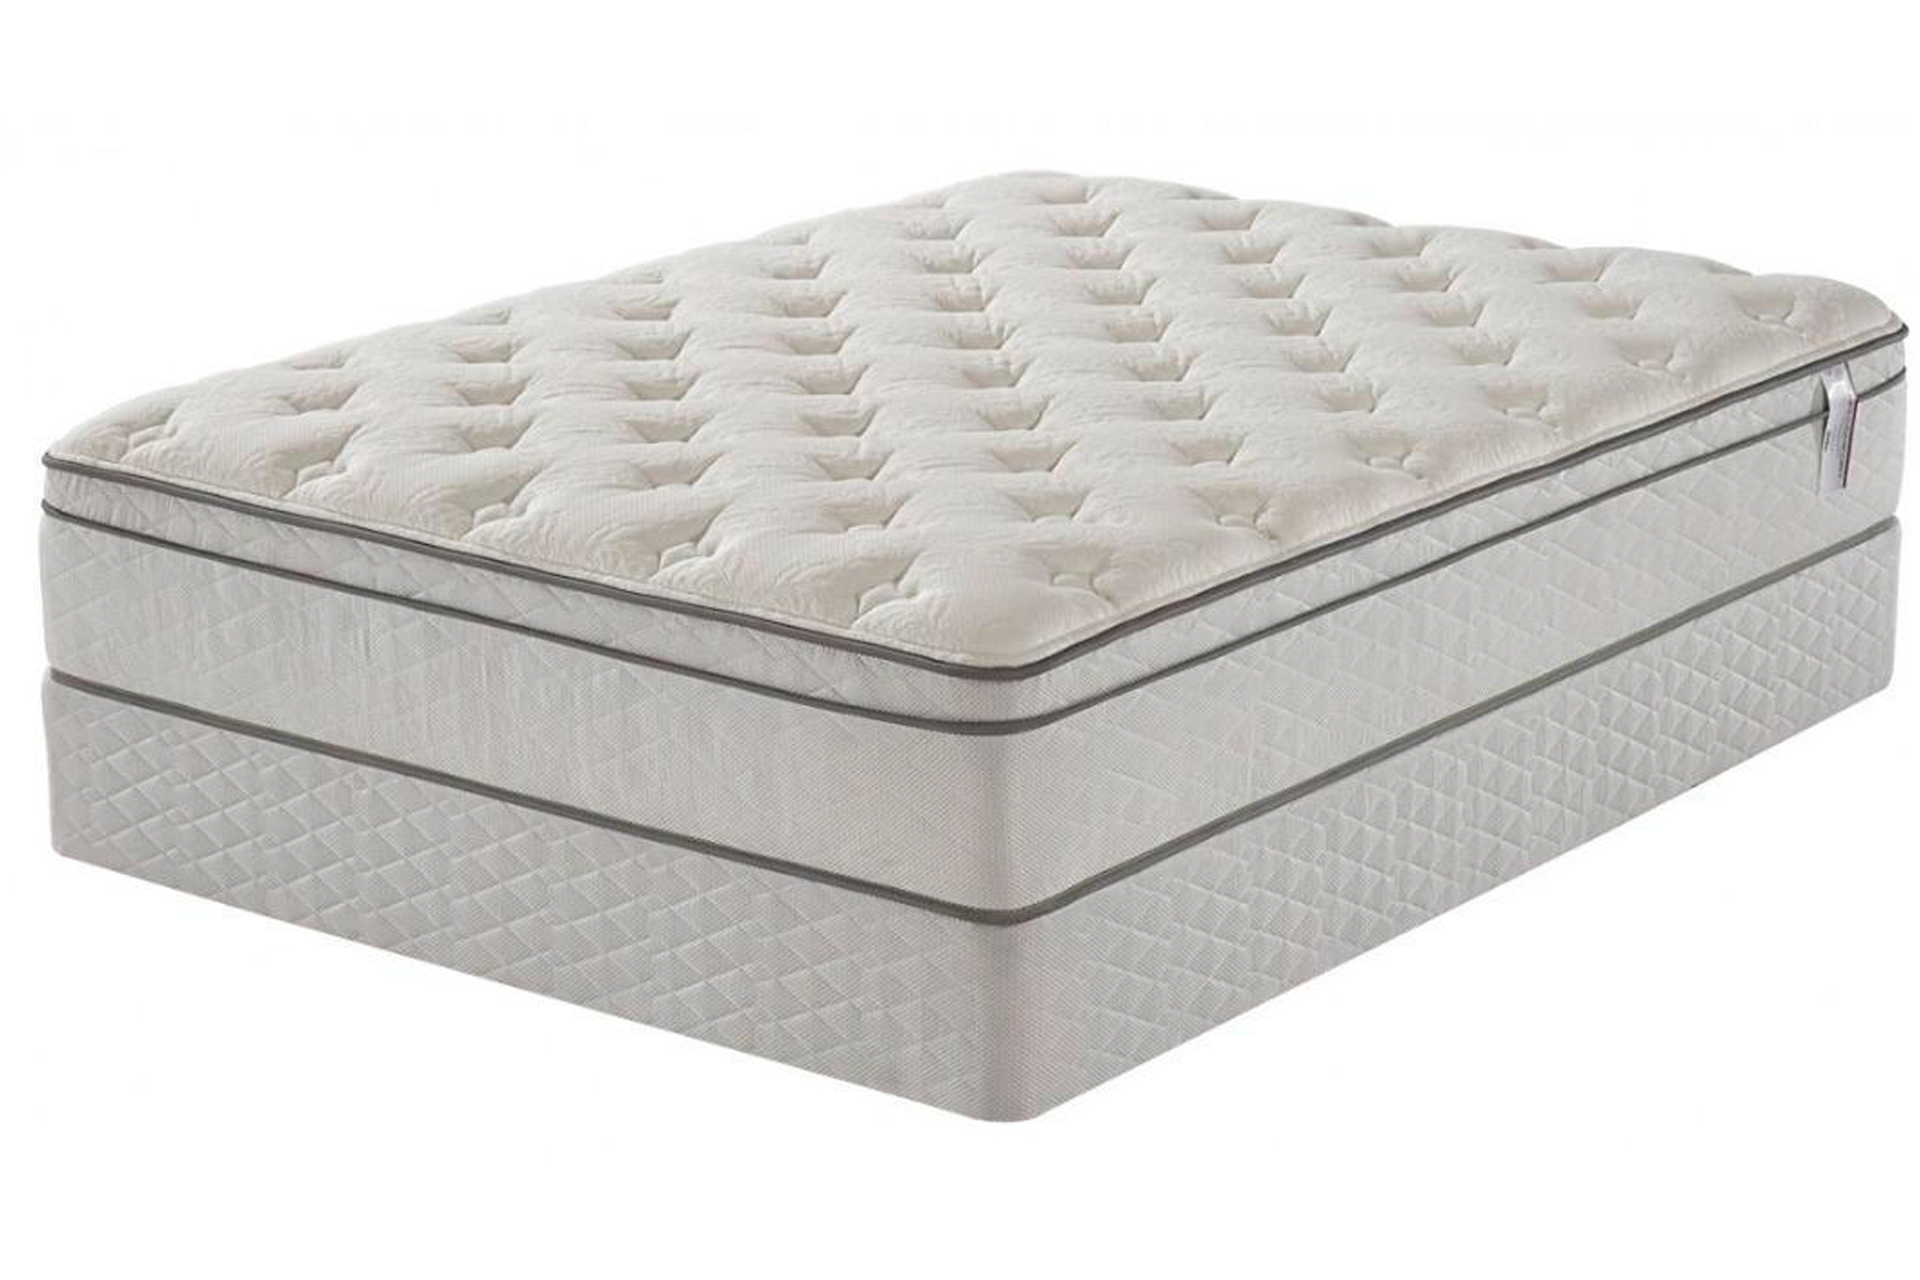 queen size pillow top mattress set with headboard